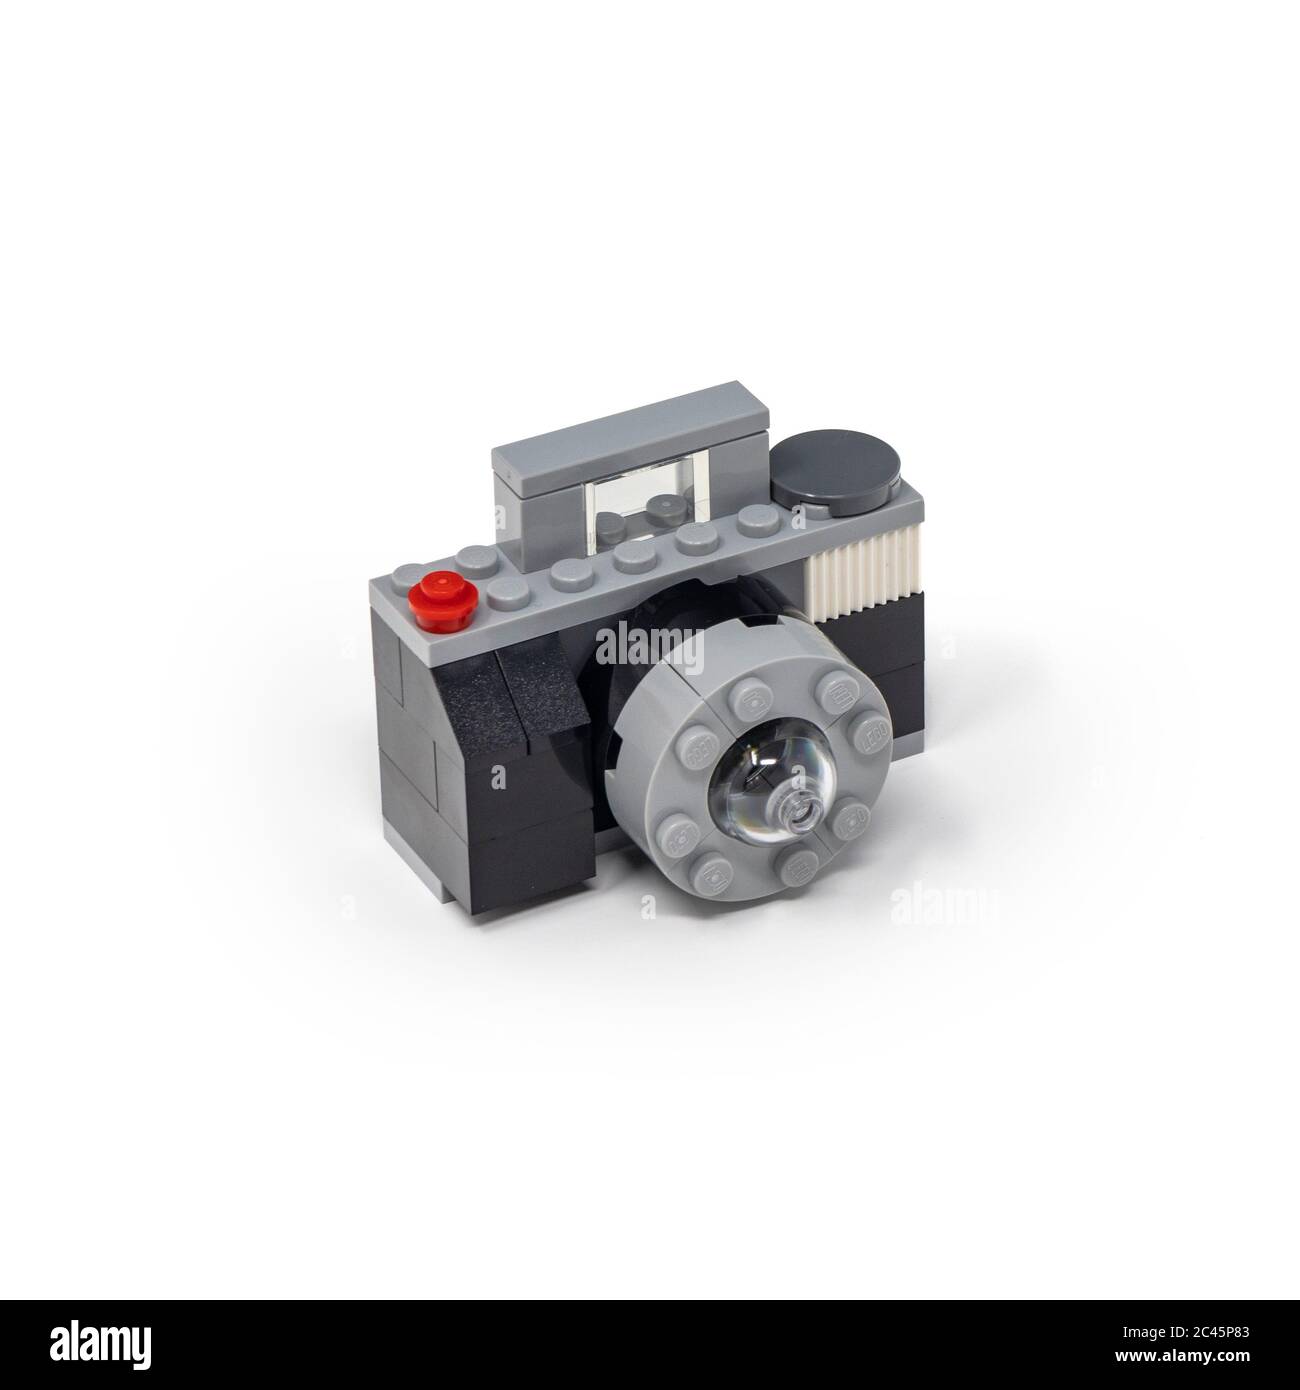 Lego camera immagini e fotografie stock ad alta risoluzione - Alamy